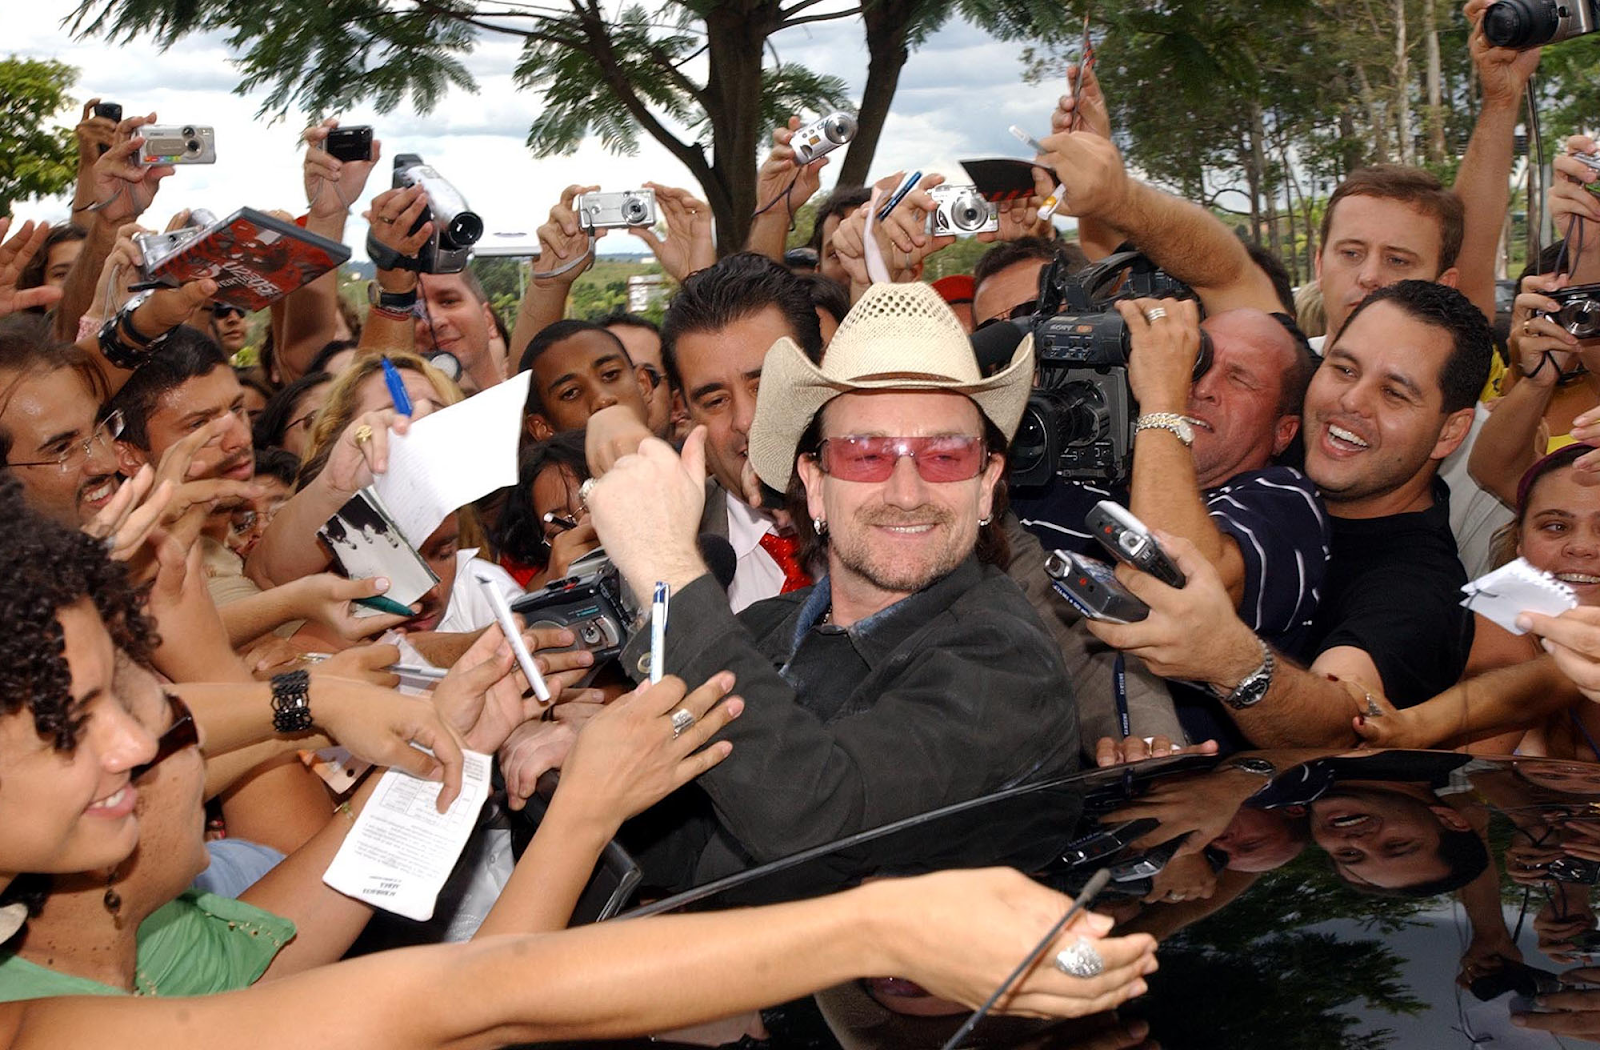 <u>Query</u>: Fans swarming the lead vocalist of rock band U2 for autographs<br>
      <u>Named Entity</u>: Bono